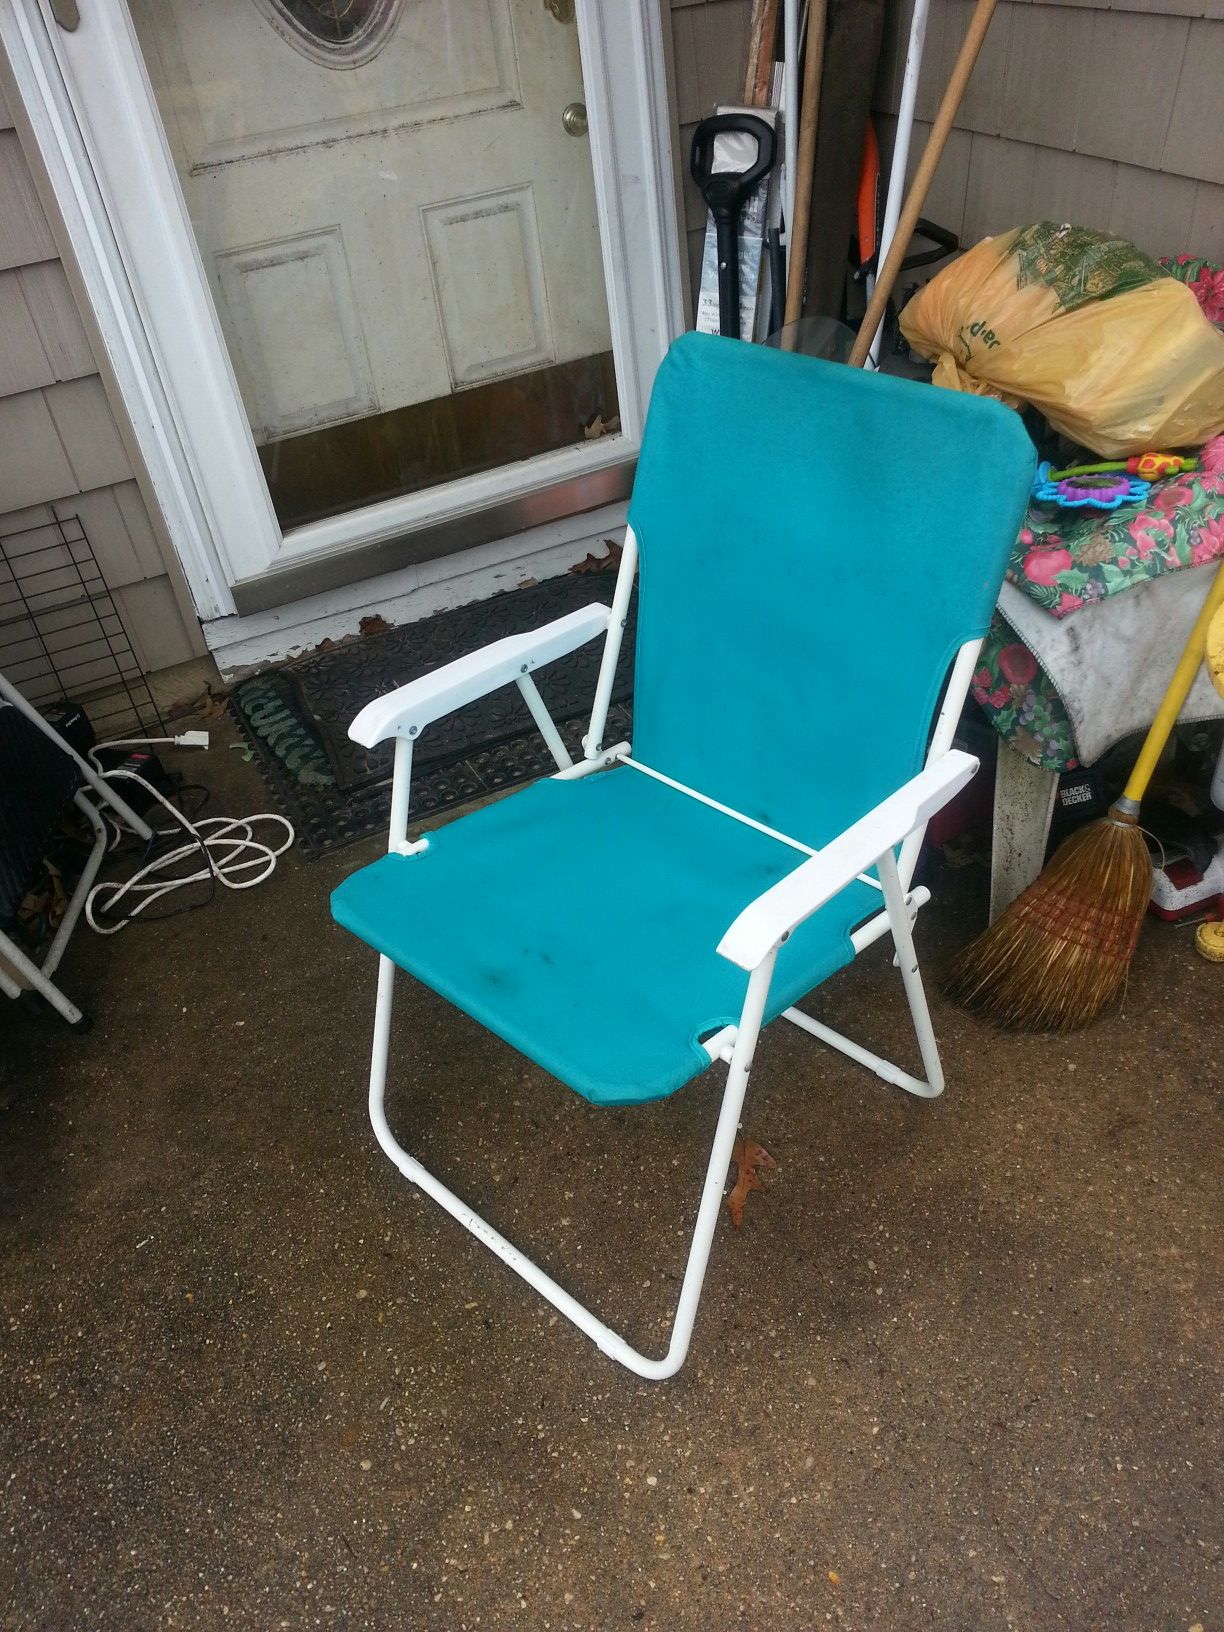 Nice fold up chair